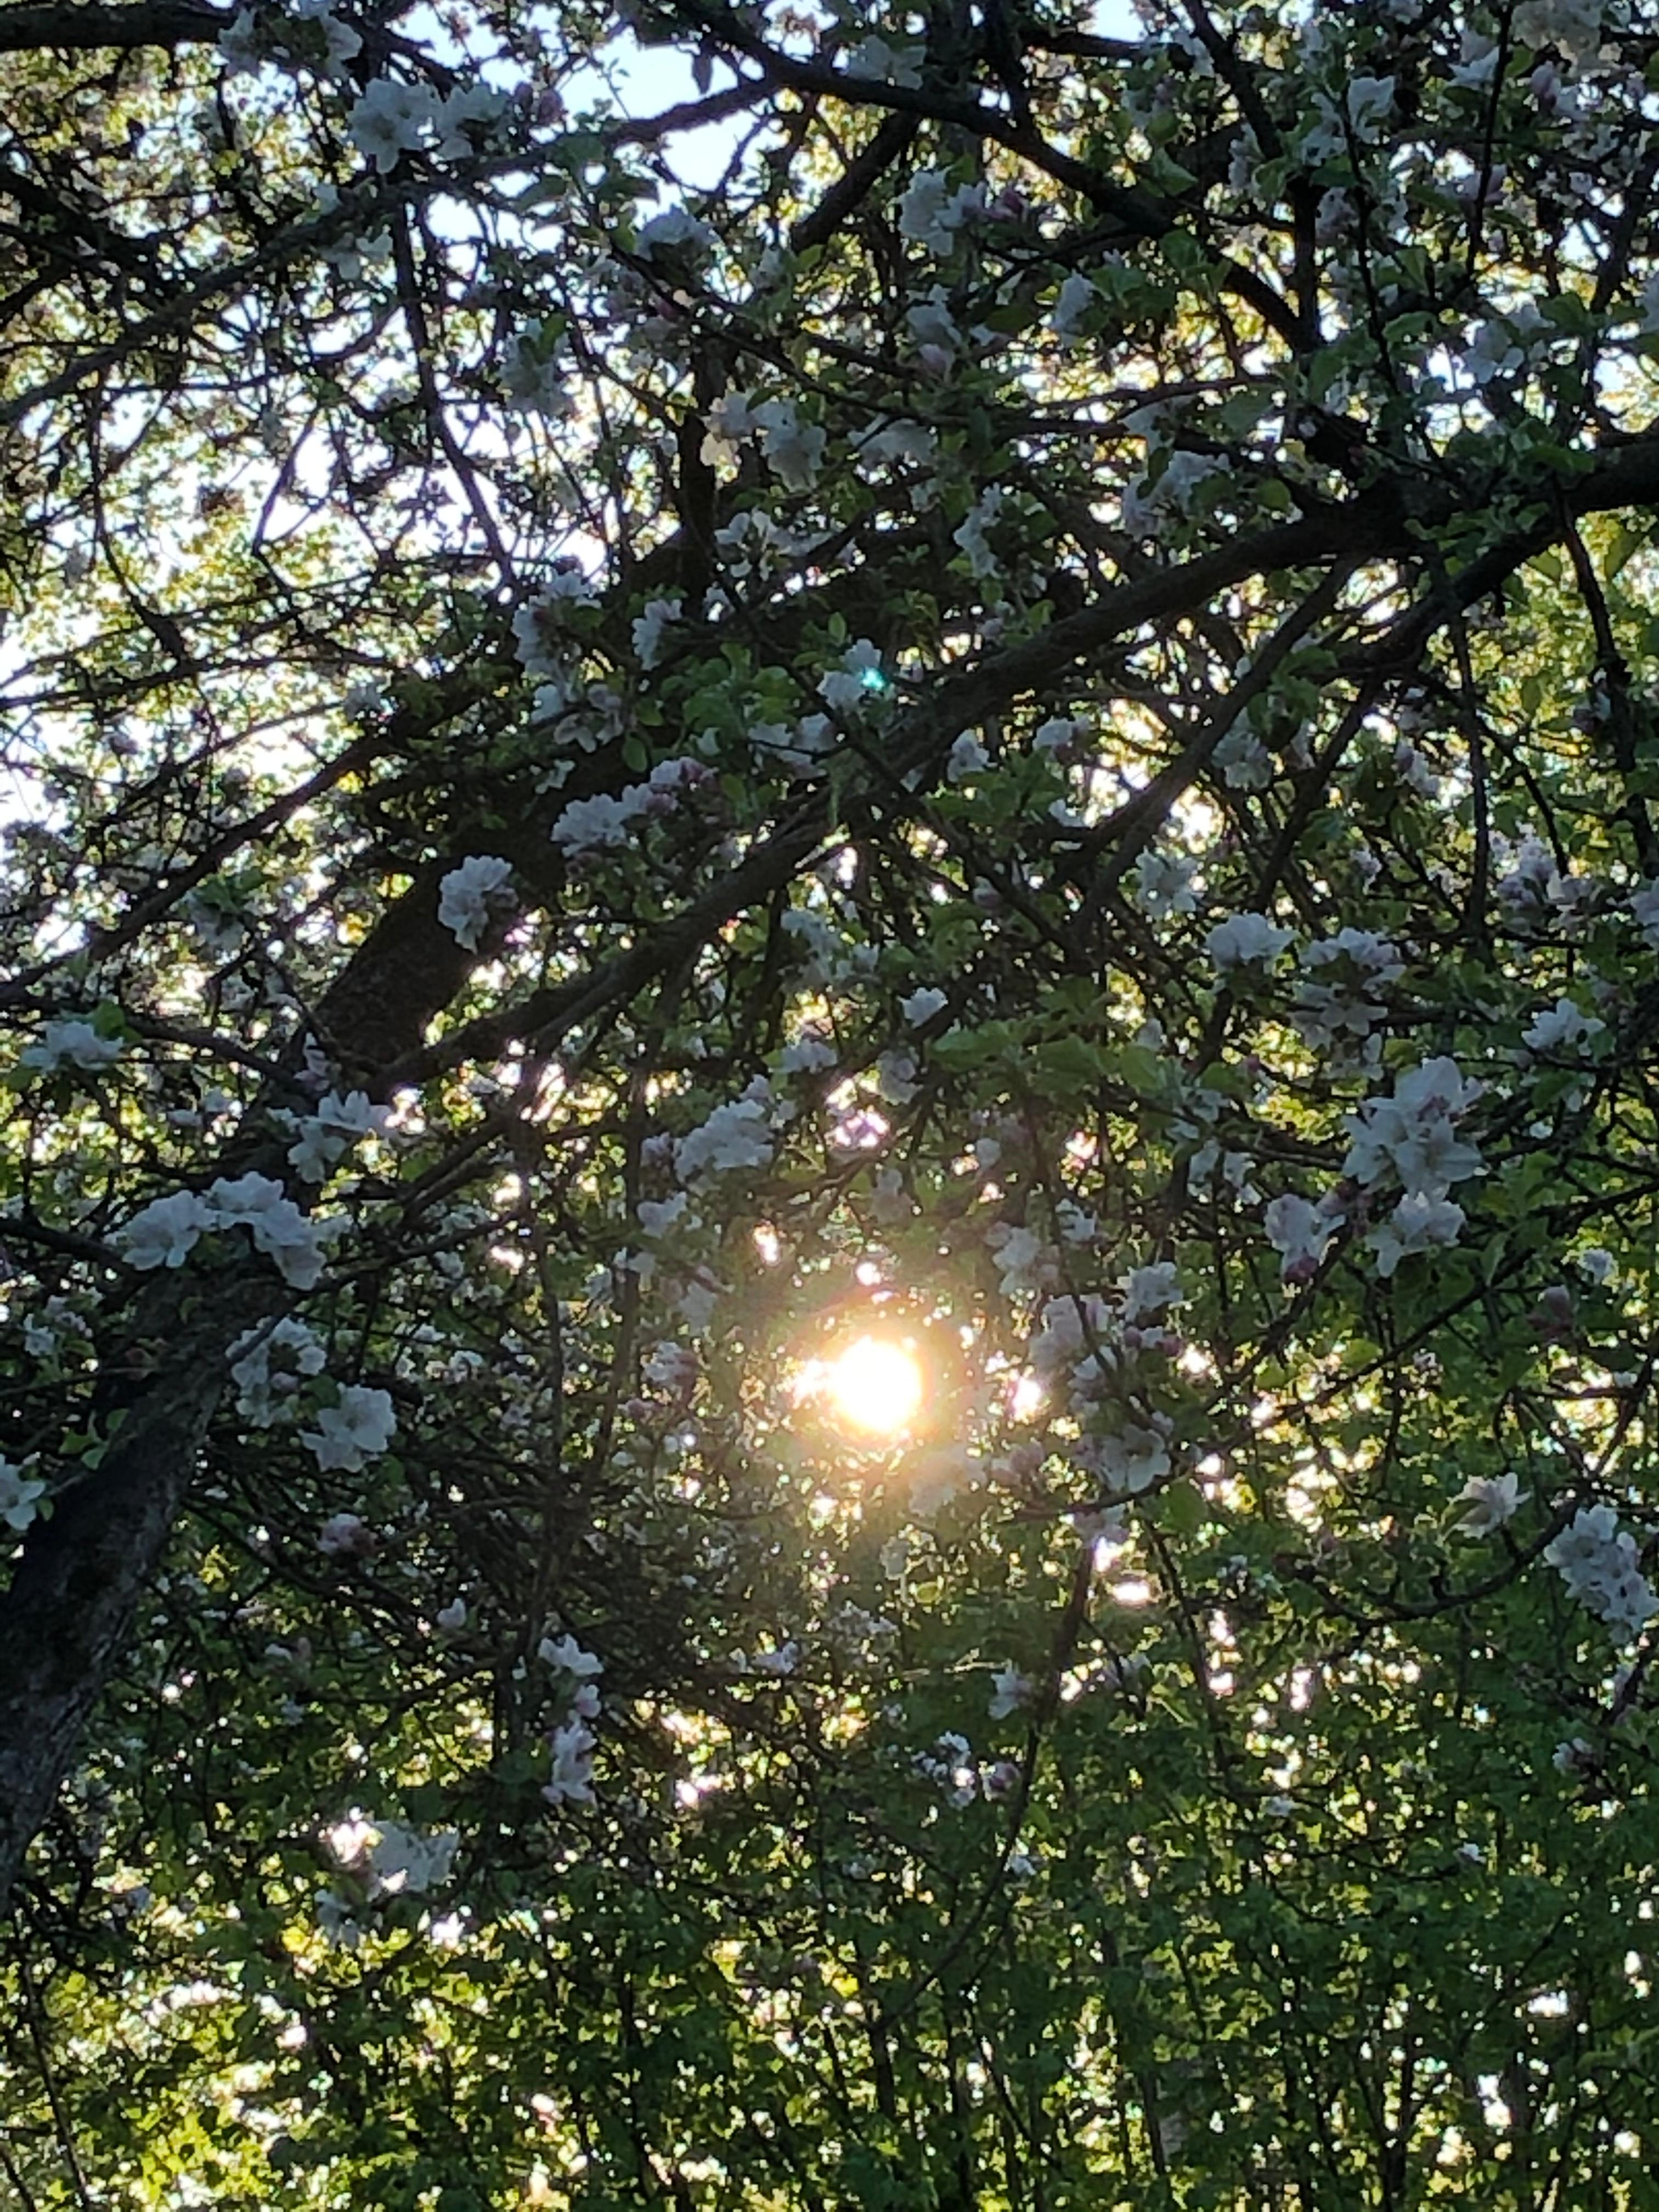 Apfelblüten und Sonne, sooo schön!
#frühling #naturliebe